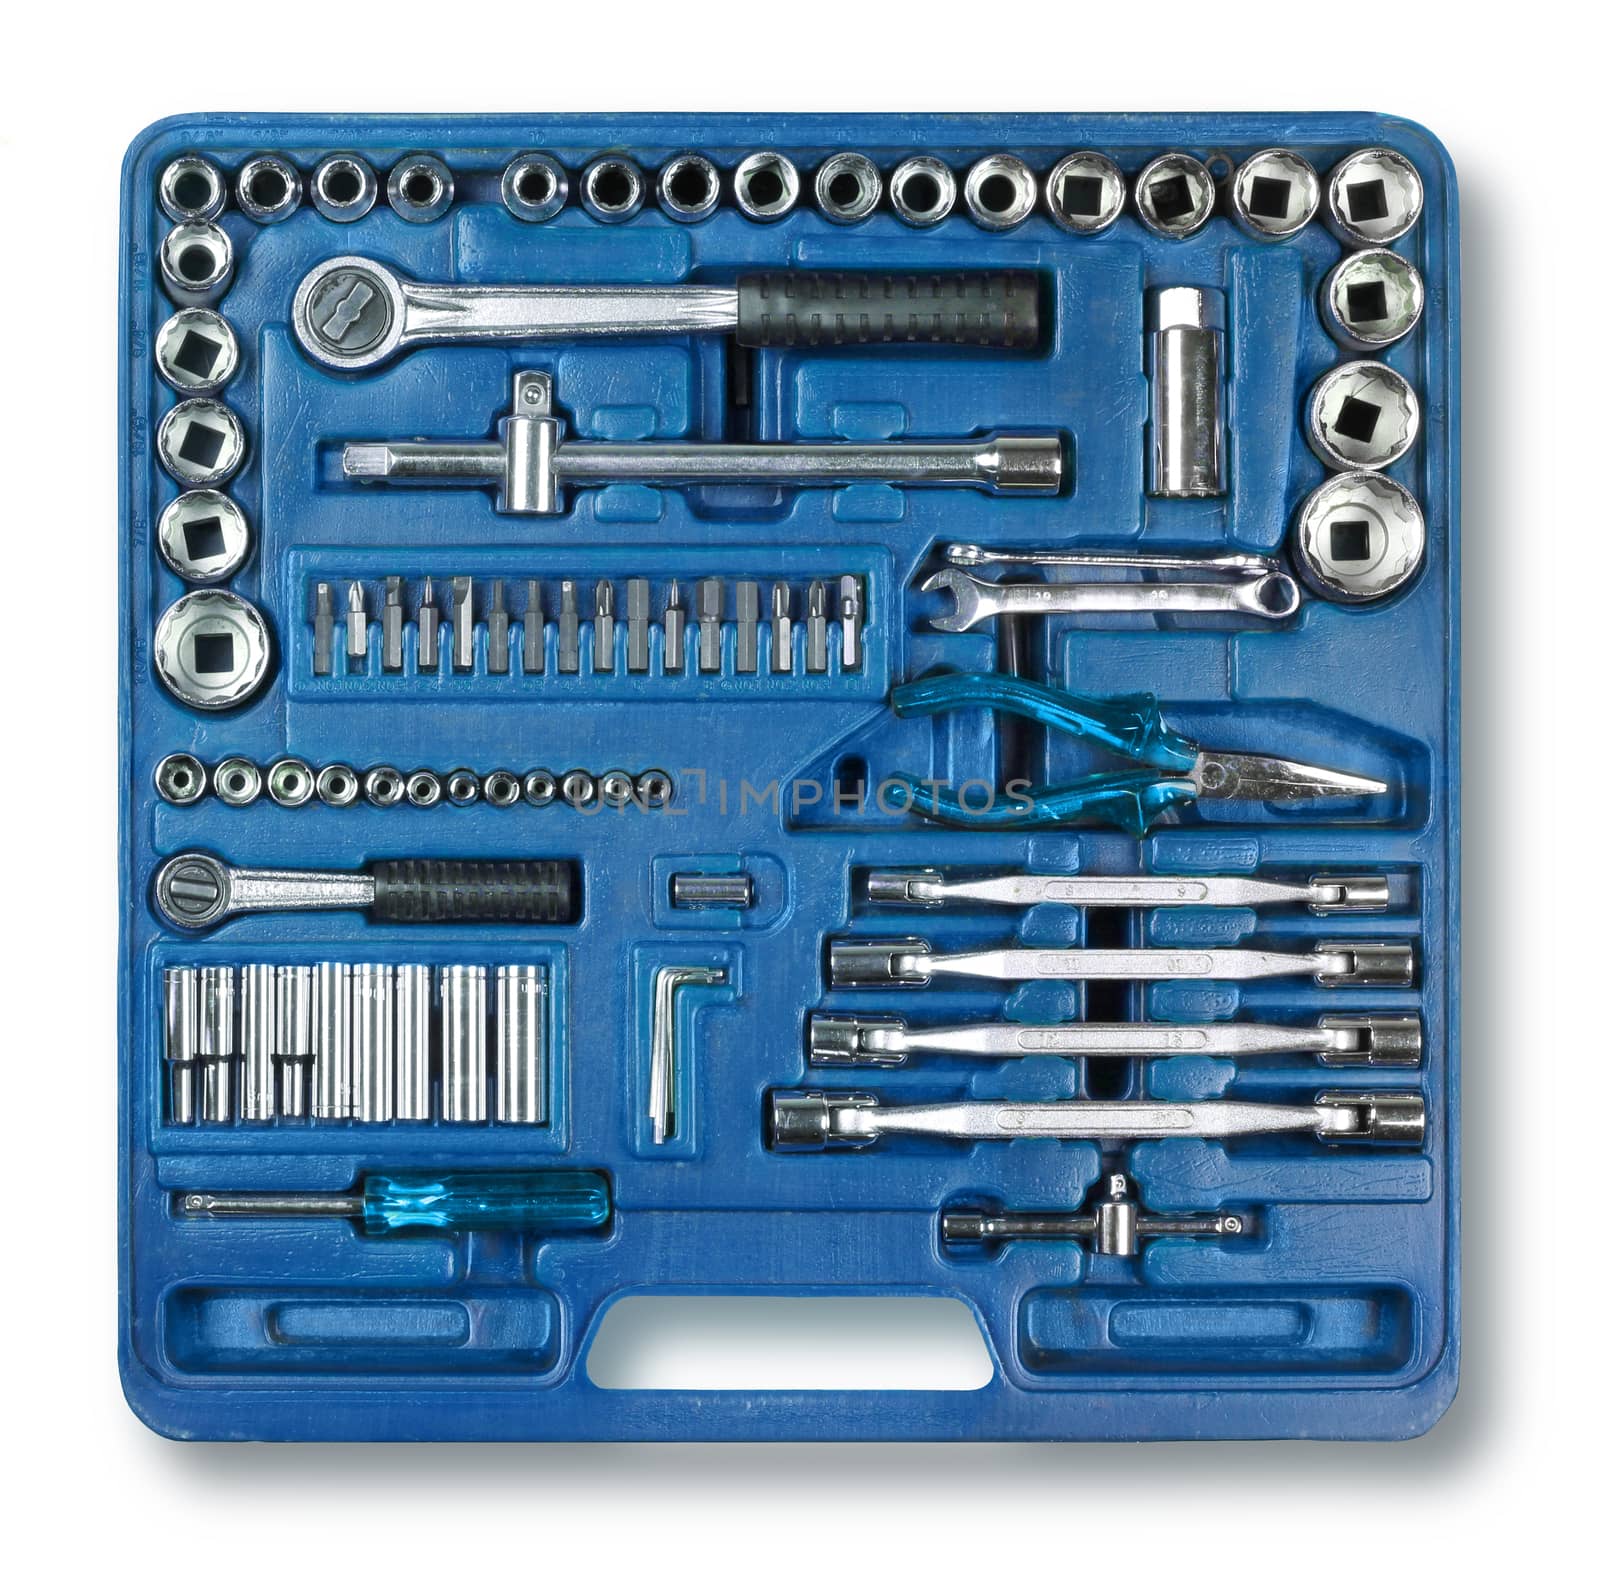 Mechanic DIY tools kit isolated on white background